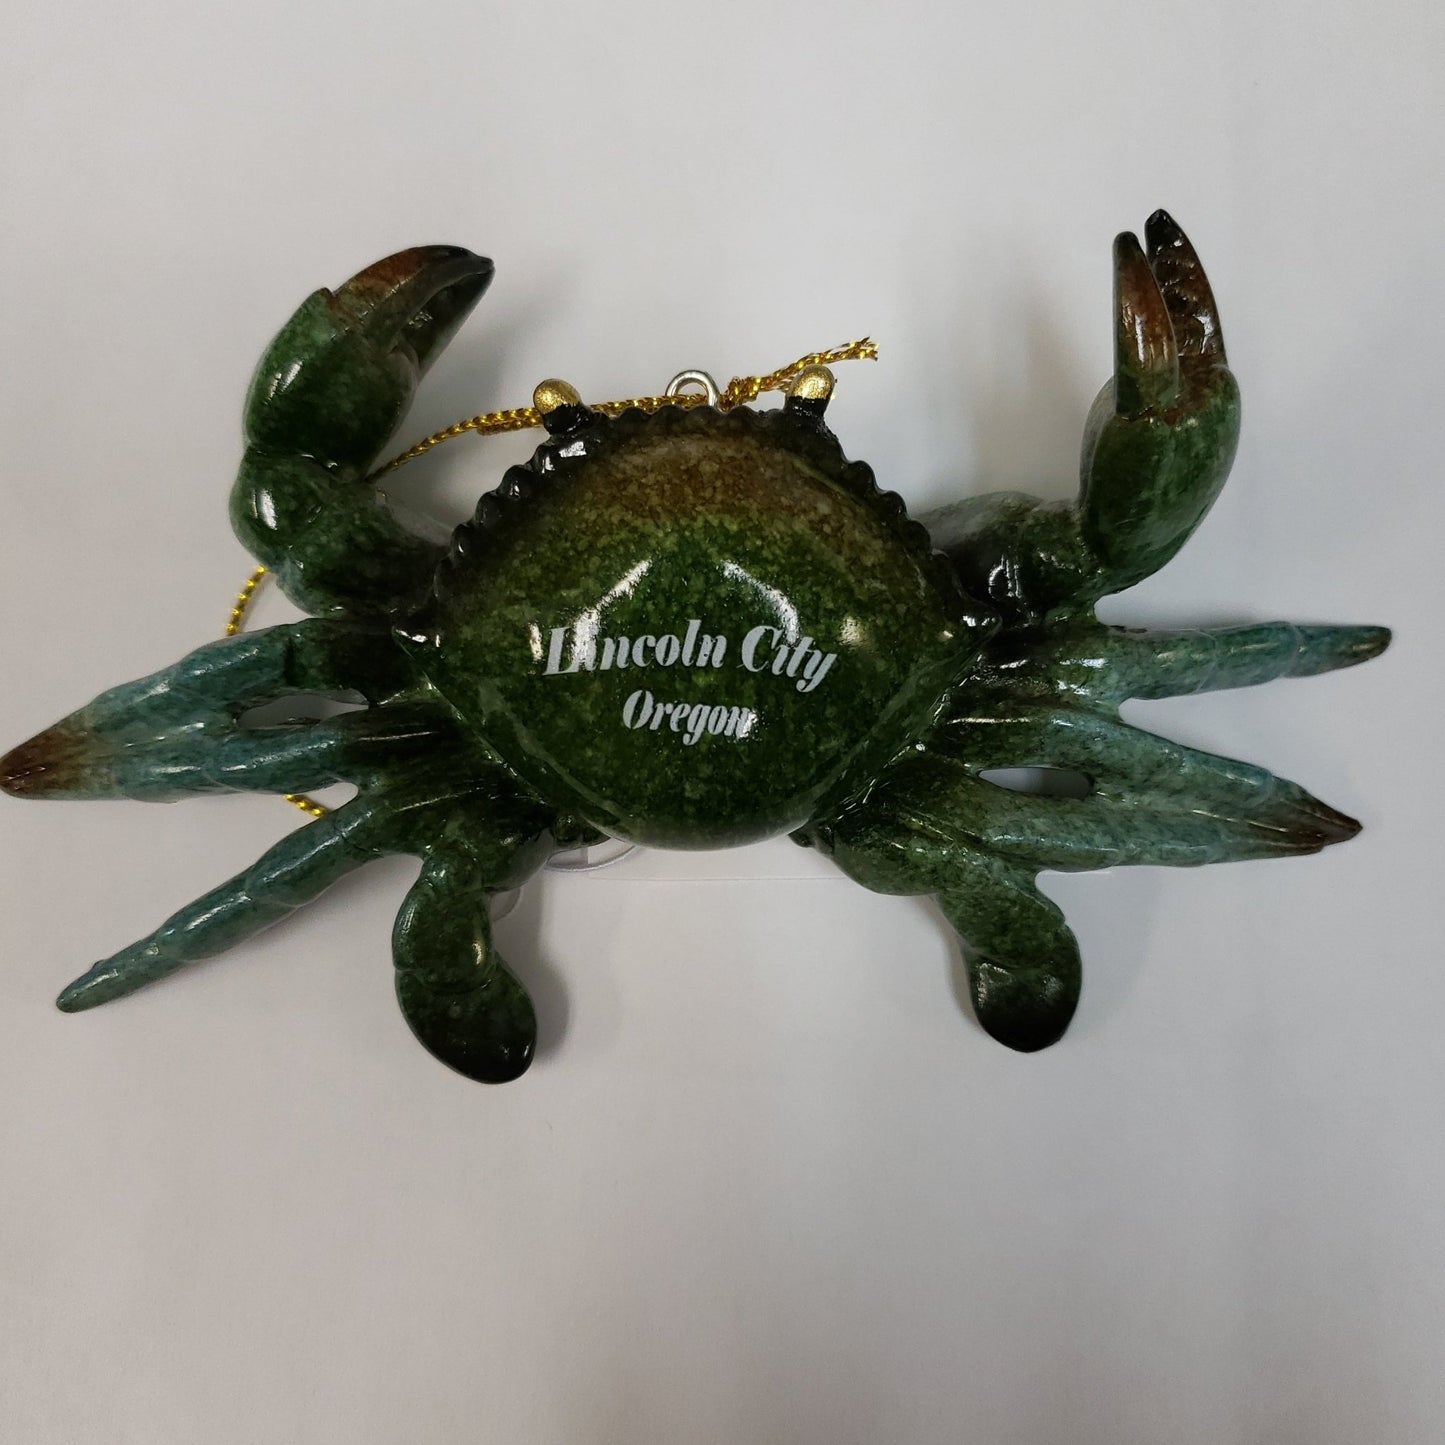 Green Crab Ornament